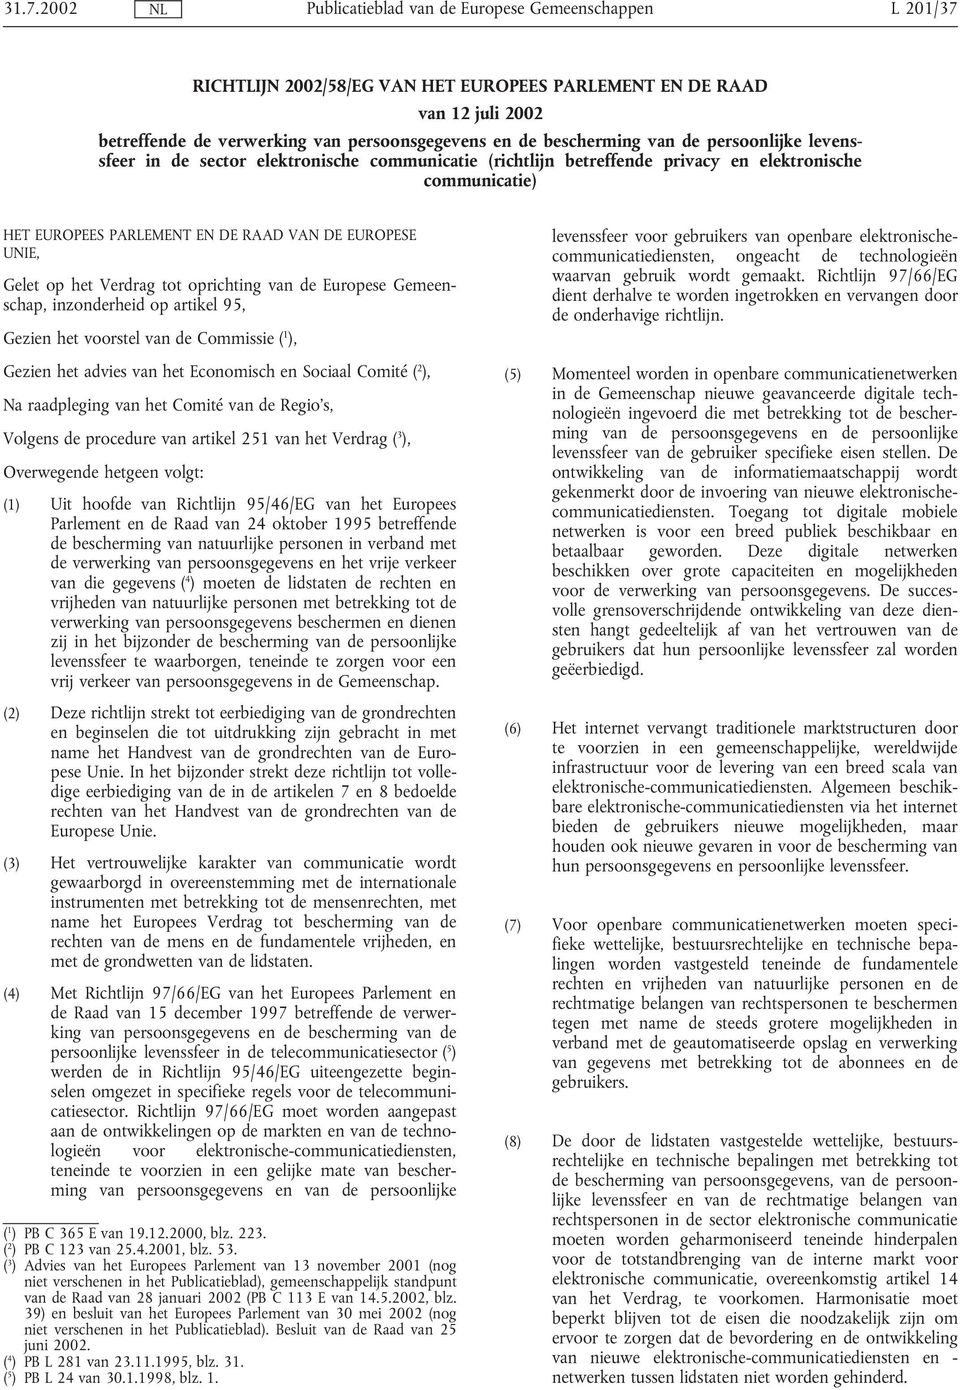 Europese Gemeenschap, inzonderheid op artikel 95, Gezien het voorstel van de Commissie ( 1 ), Gezien het advies van het Economisch en Sociaal Comité ( 2 ), Na raadpleging van het Comité van de Regio